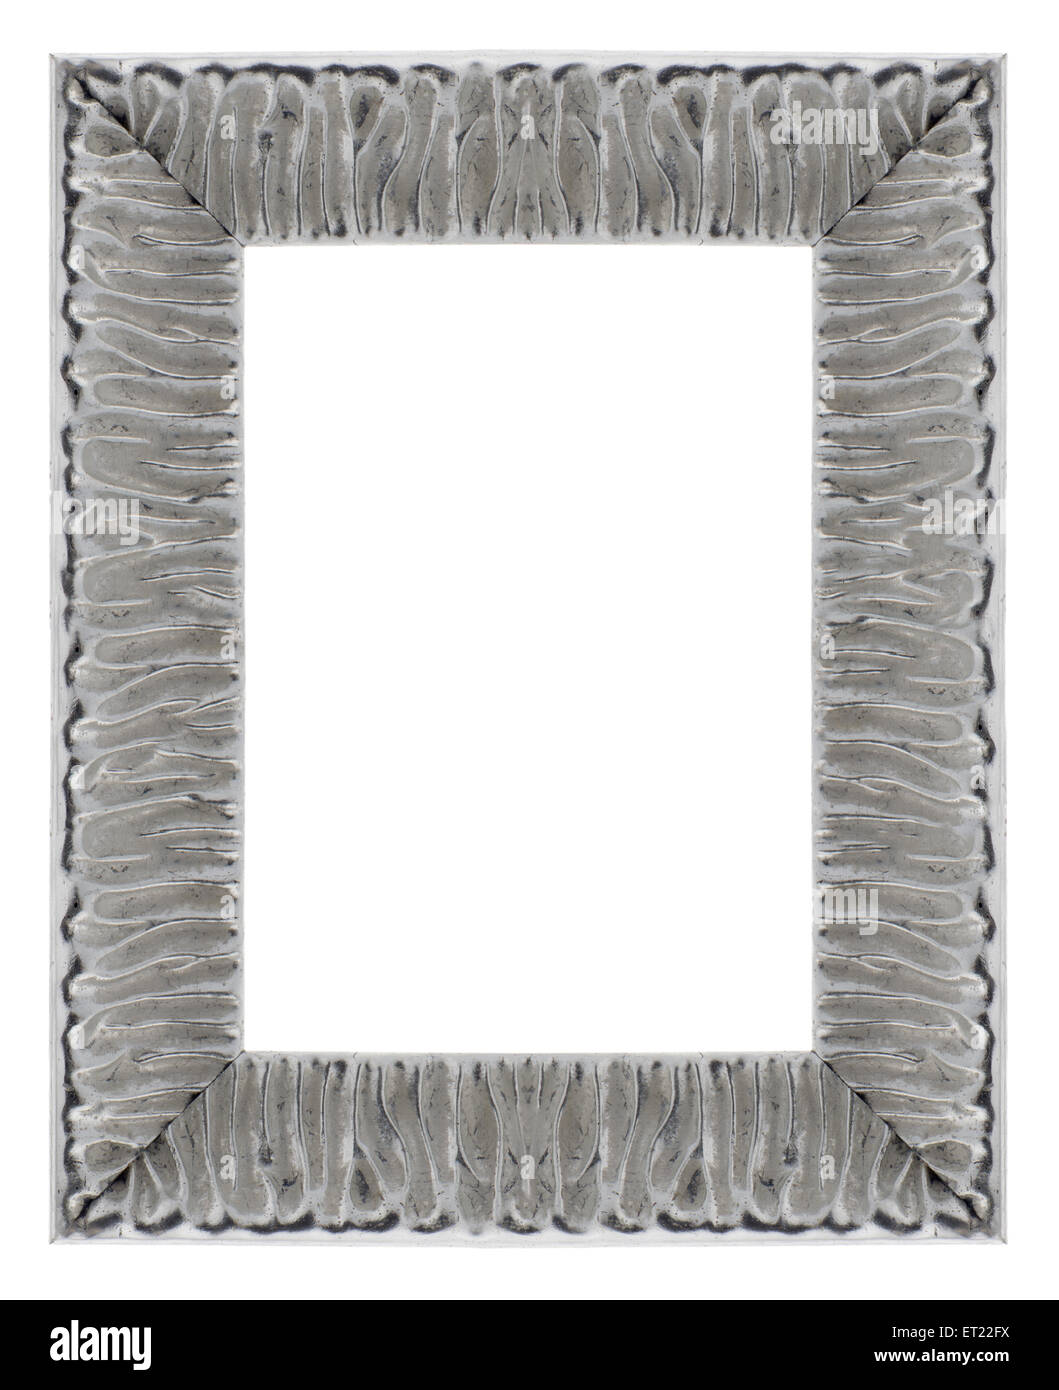 Stylish Silver Frame isolated on white background. Stock Photo